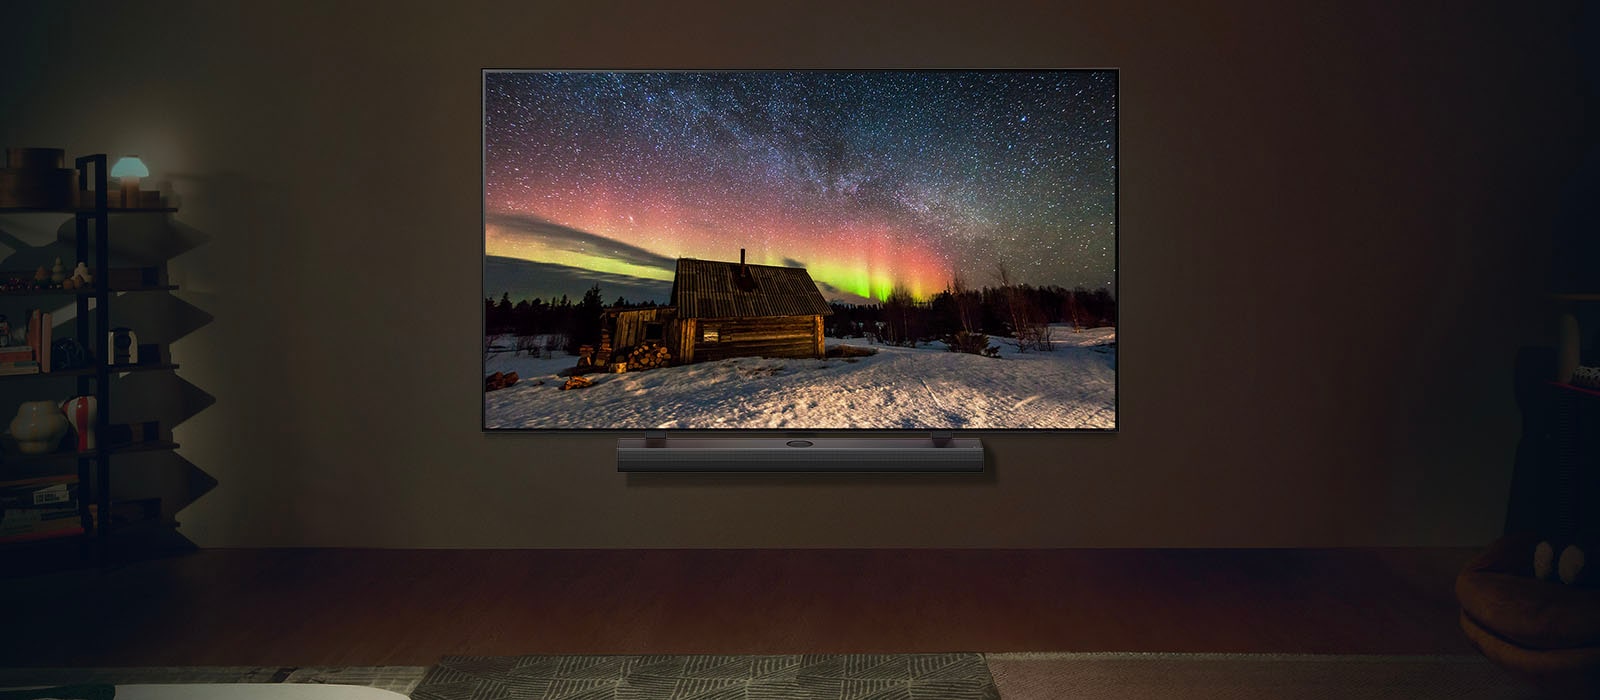 LG-televisio ja LG Soundbar modernissa olohuoneessa yöllä. Näytöllä kuva revontulista ihanteellisilla kirkkaustasoilla.